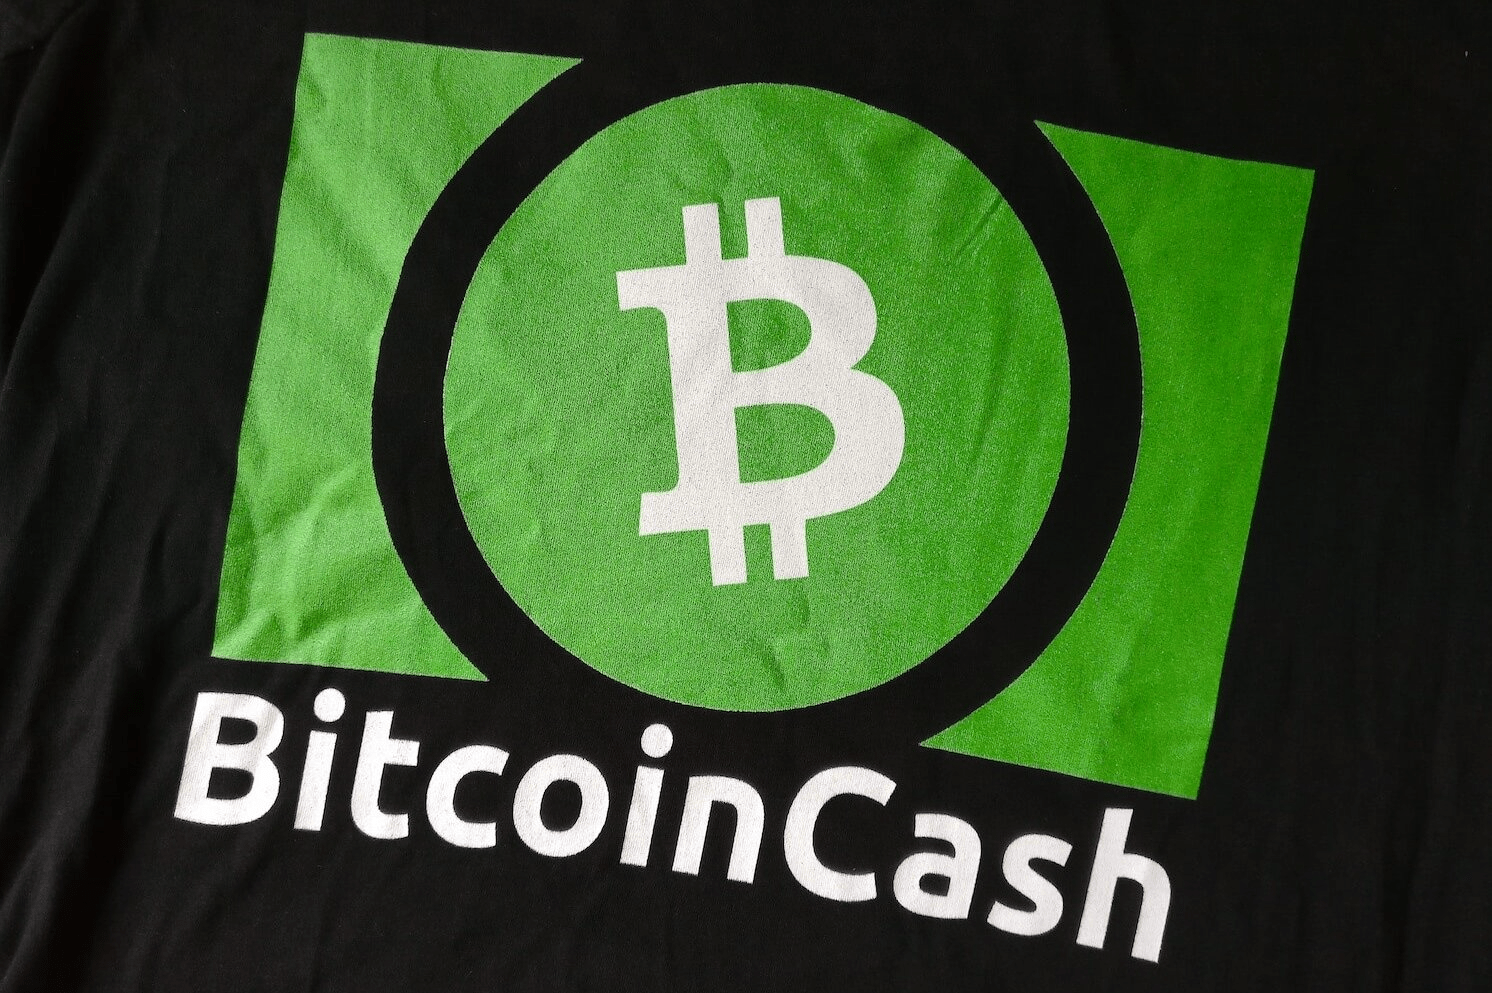 0.00030414 bitcoin cash